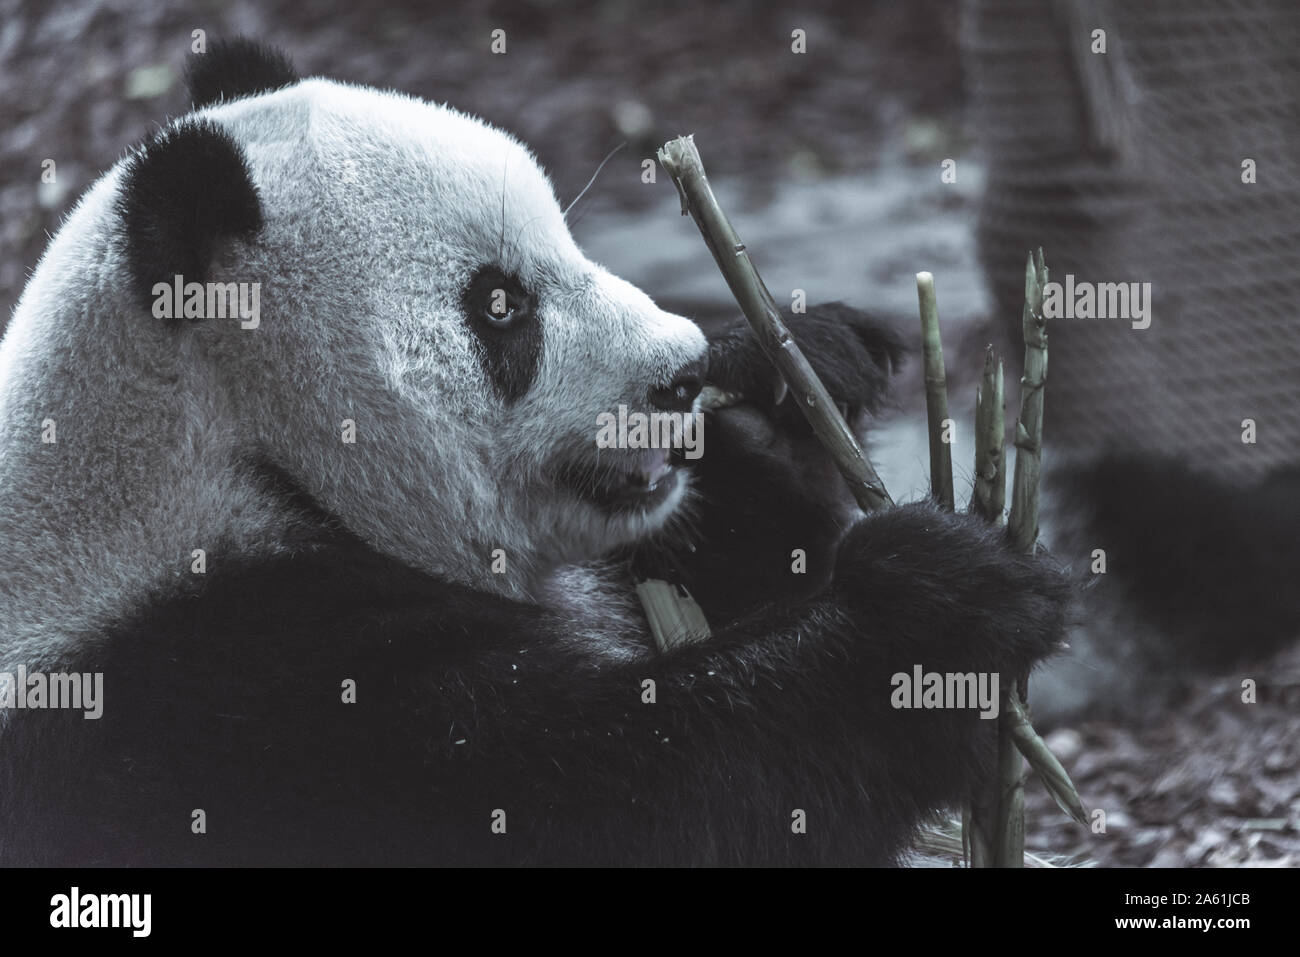 El retrato del panda gigante. Big Fat perezoso panda gigante come en el bosque de bambú. Fauna silvestre en peligro de extinción. Foto de stock